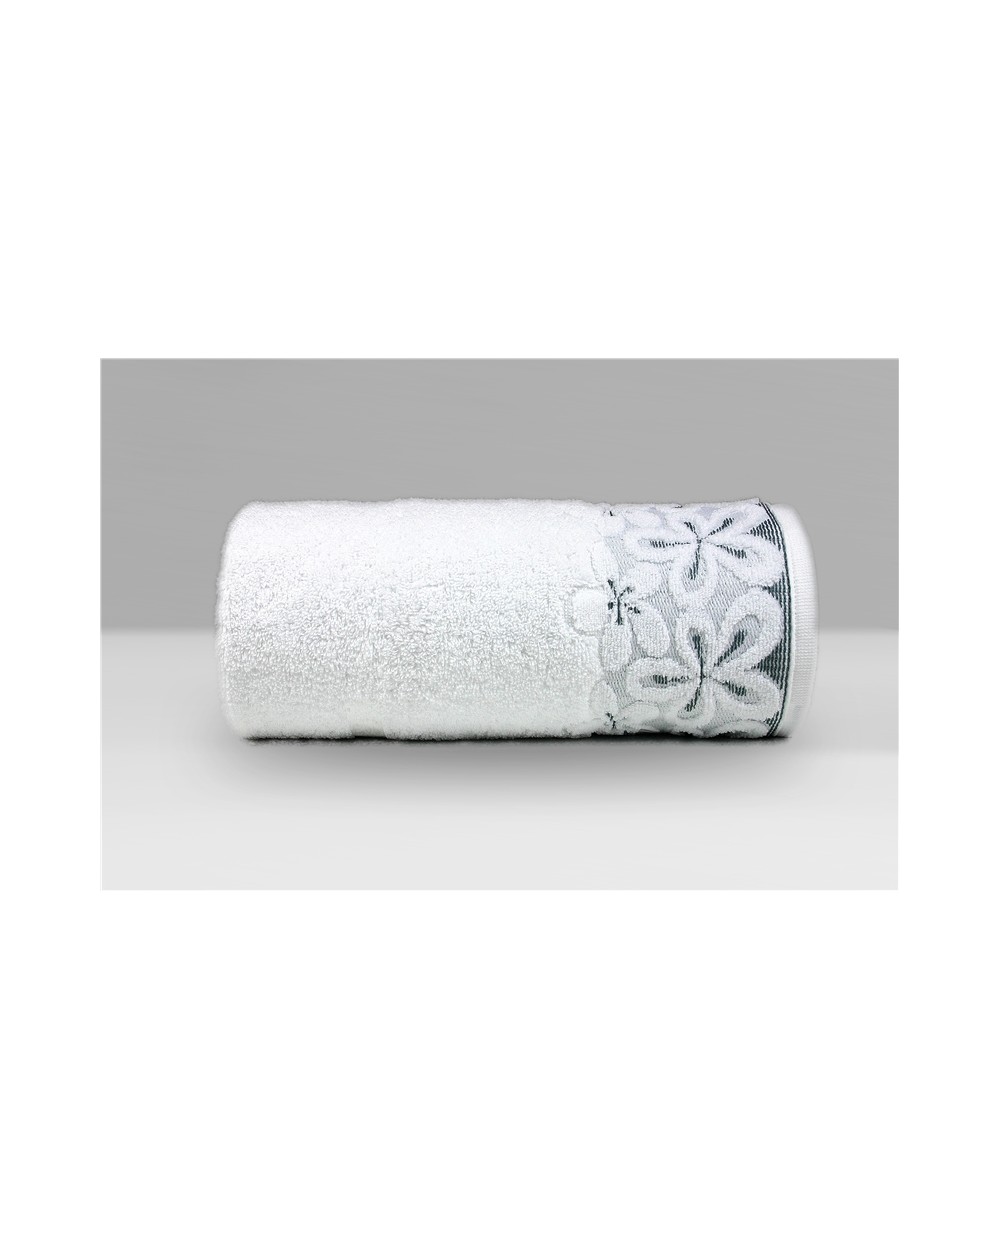 Ręcznik Bella mikrobawełna 50x90 biały